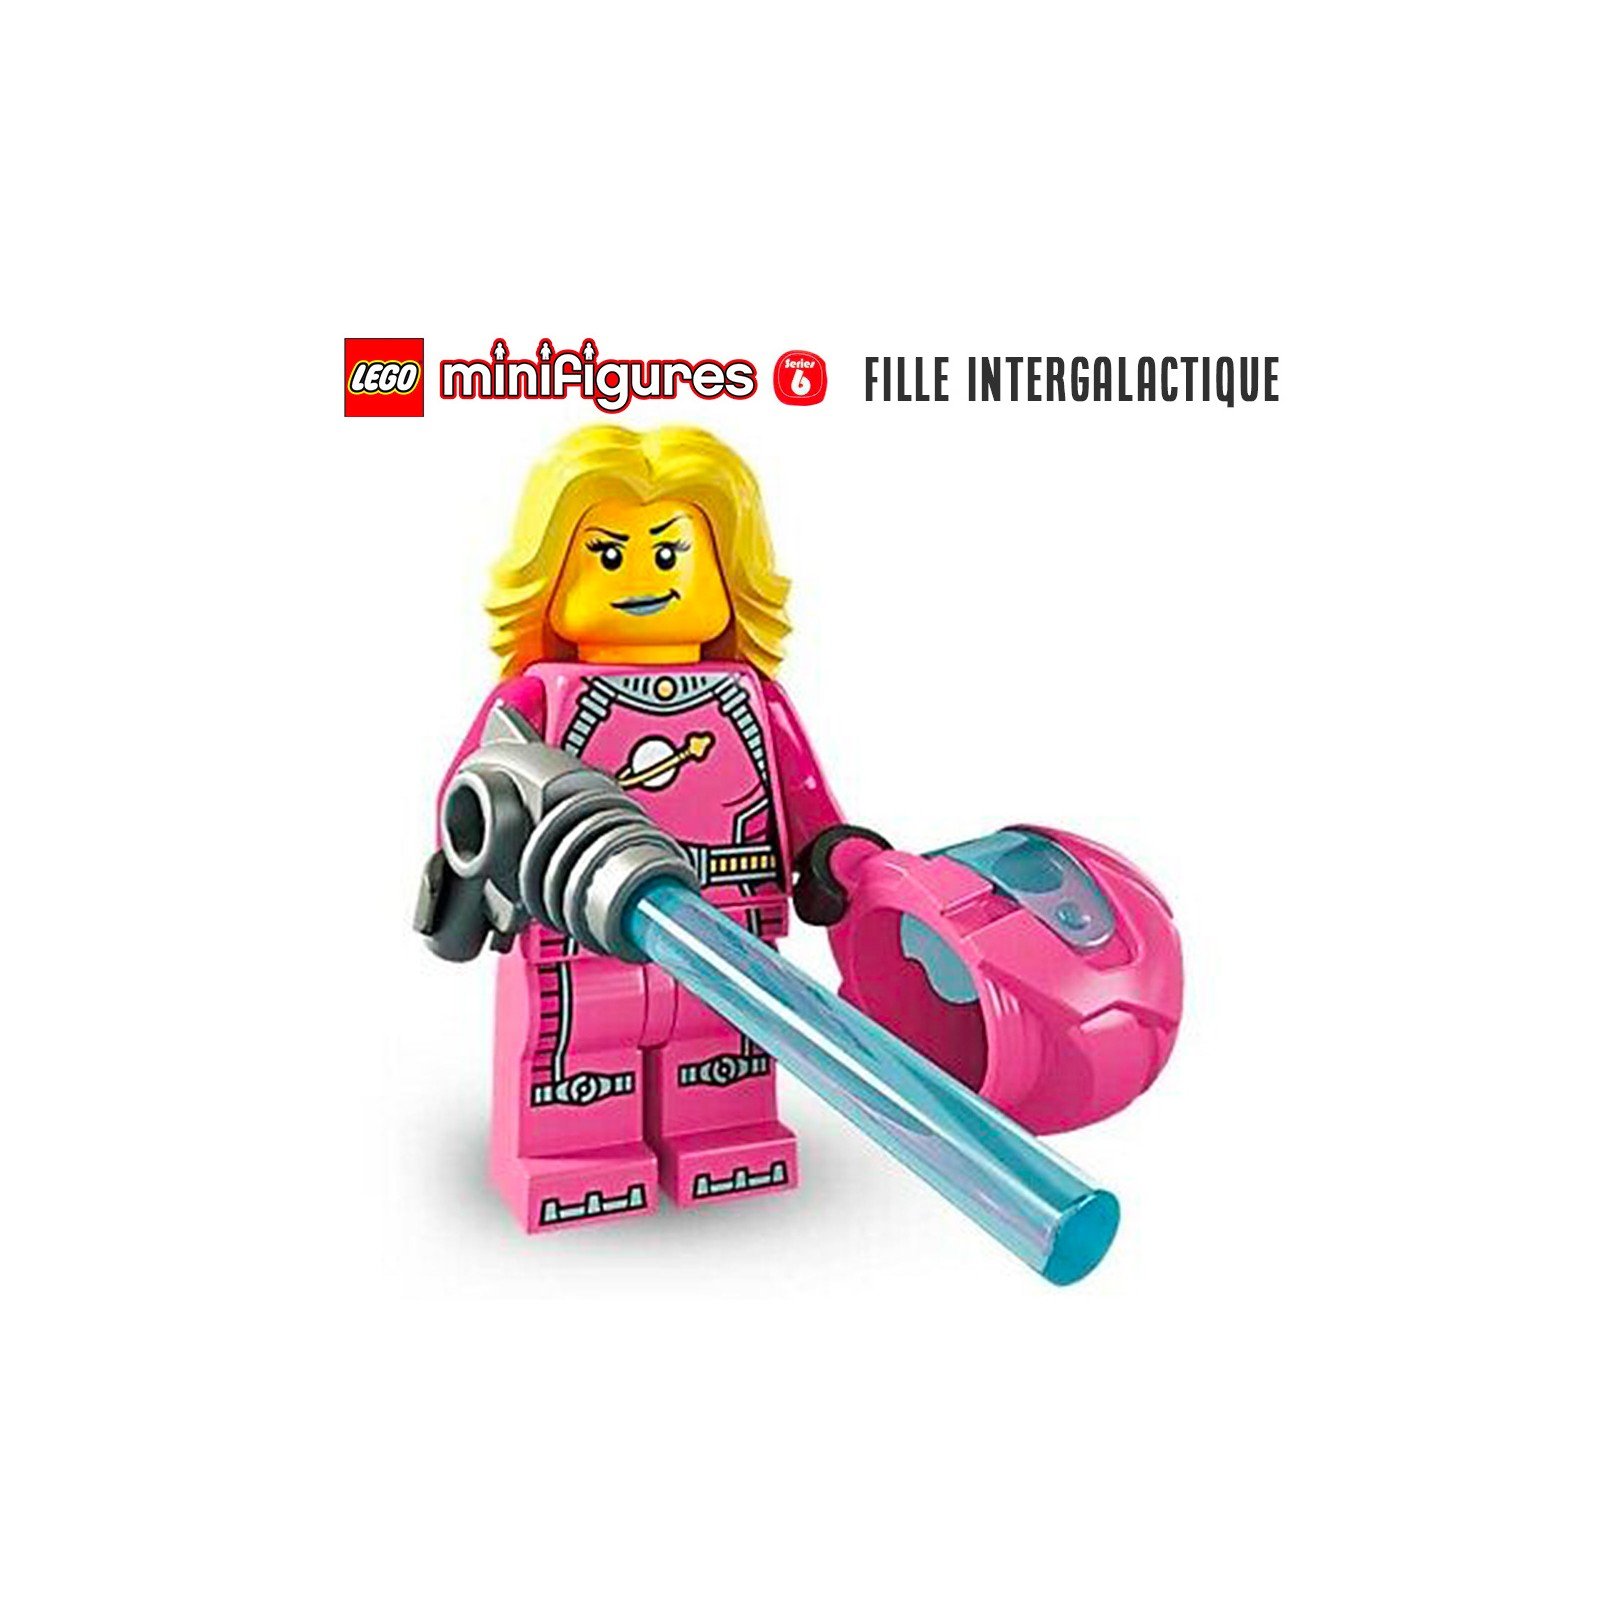 Minifigure LEGO® Série 6 - La fille intergalactique